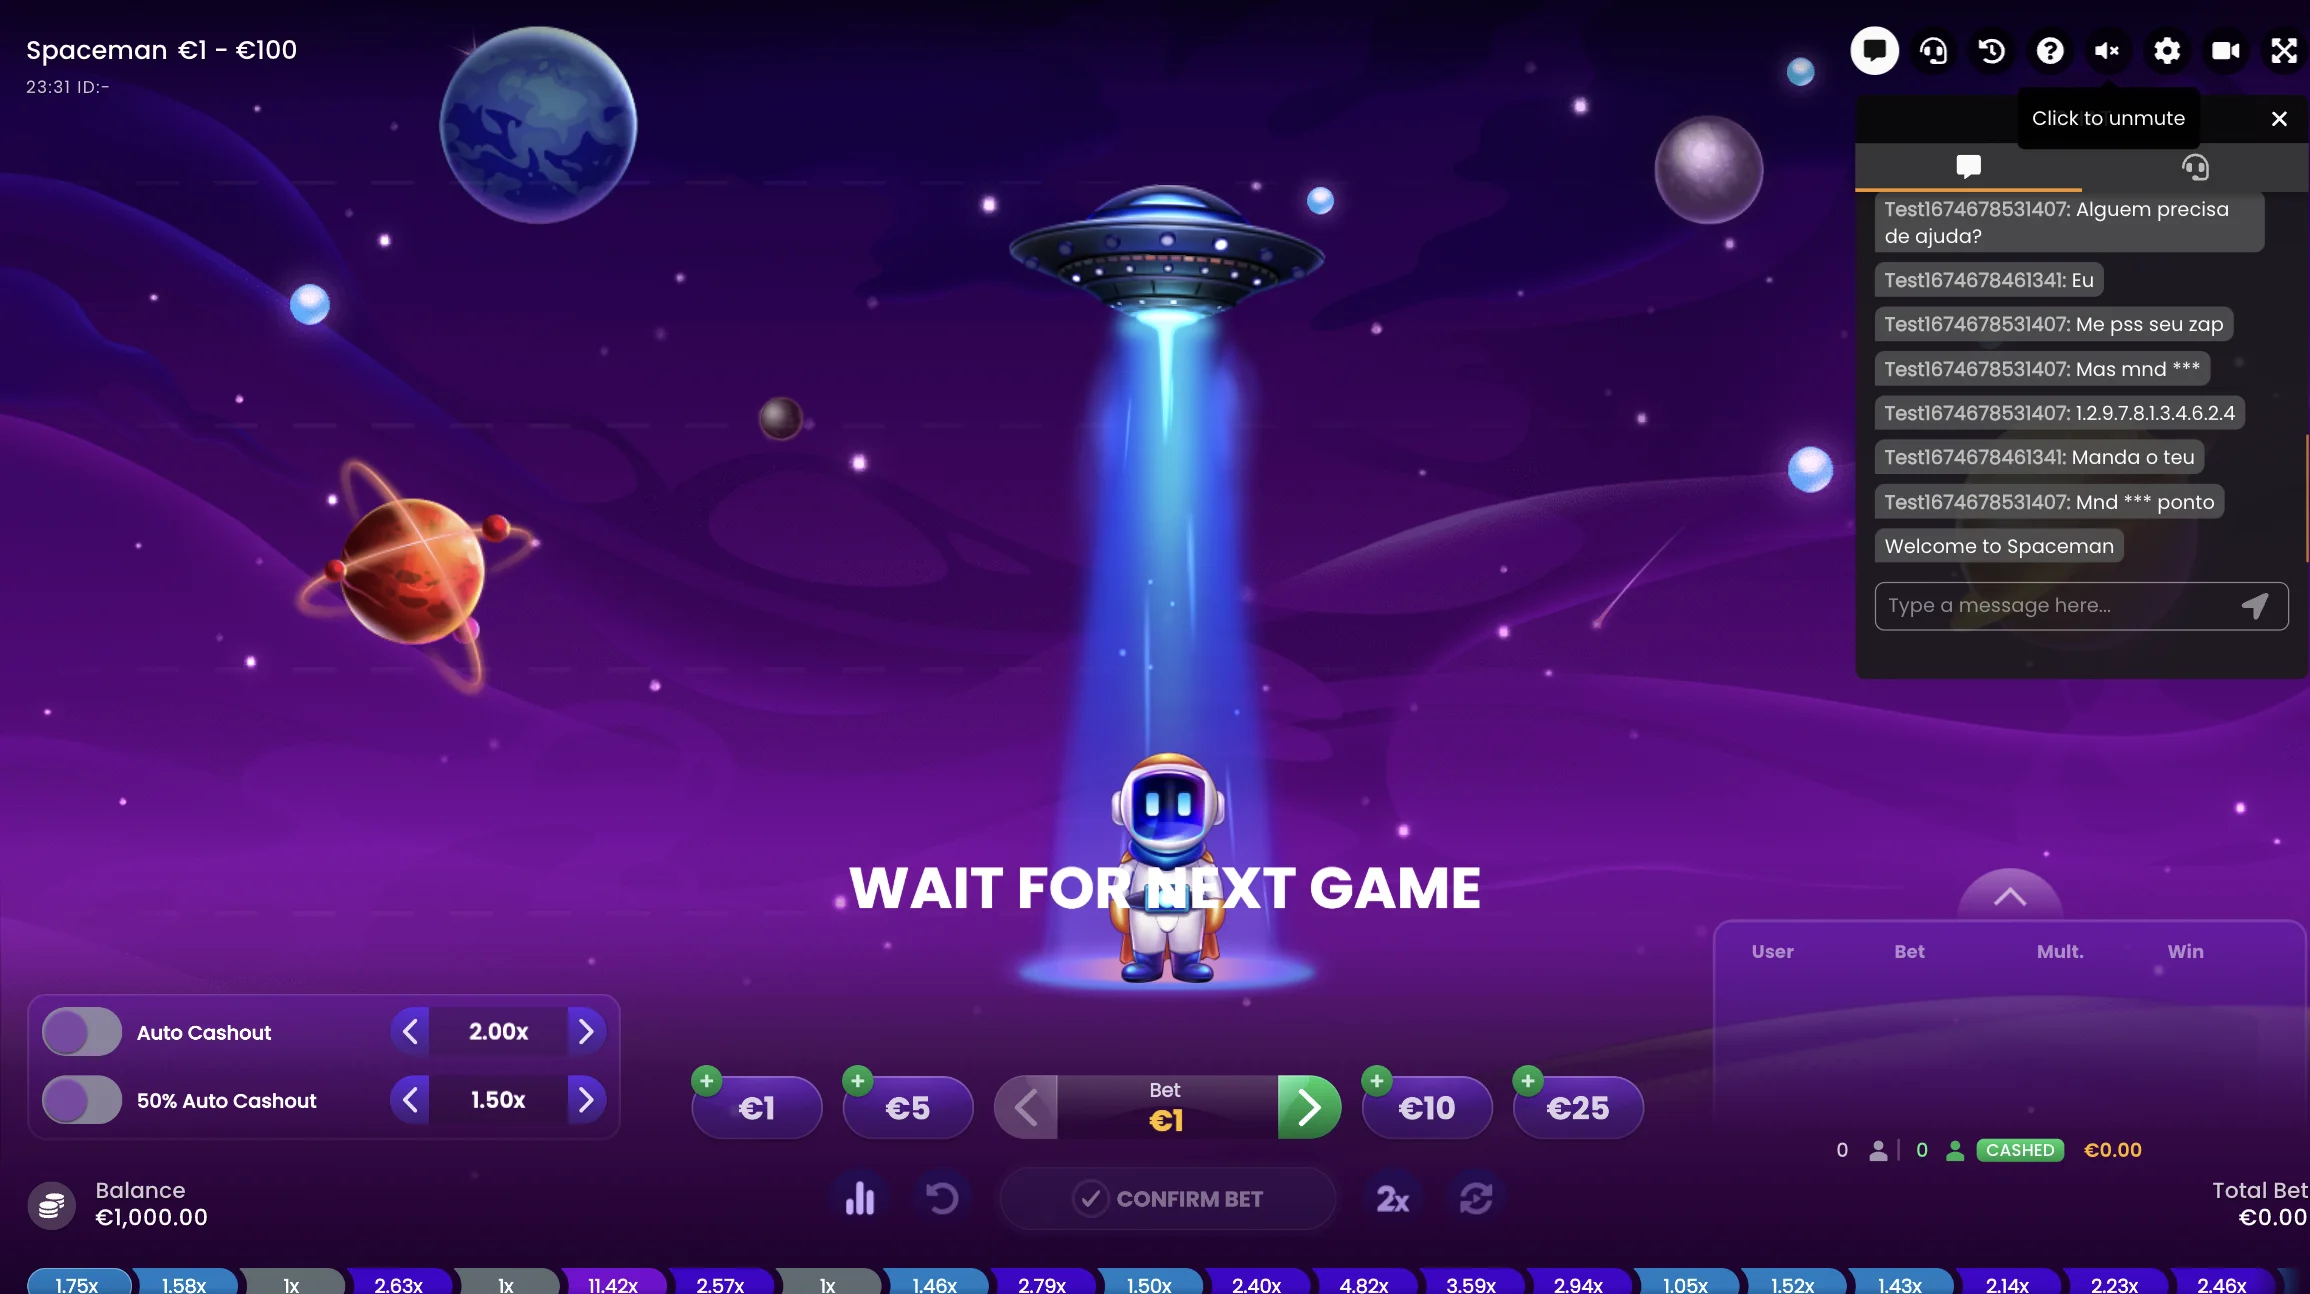 Interface do jogo Spaceman